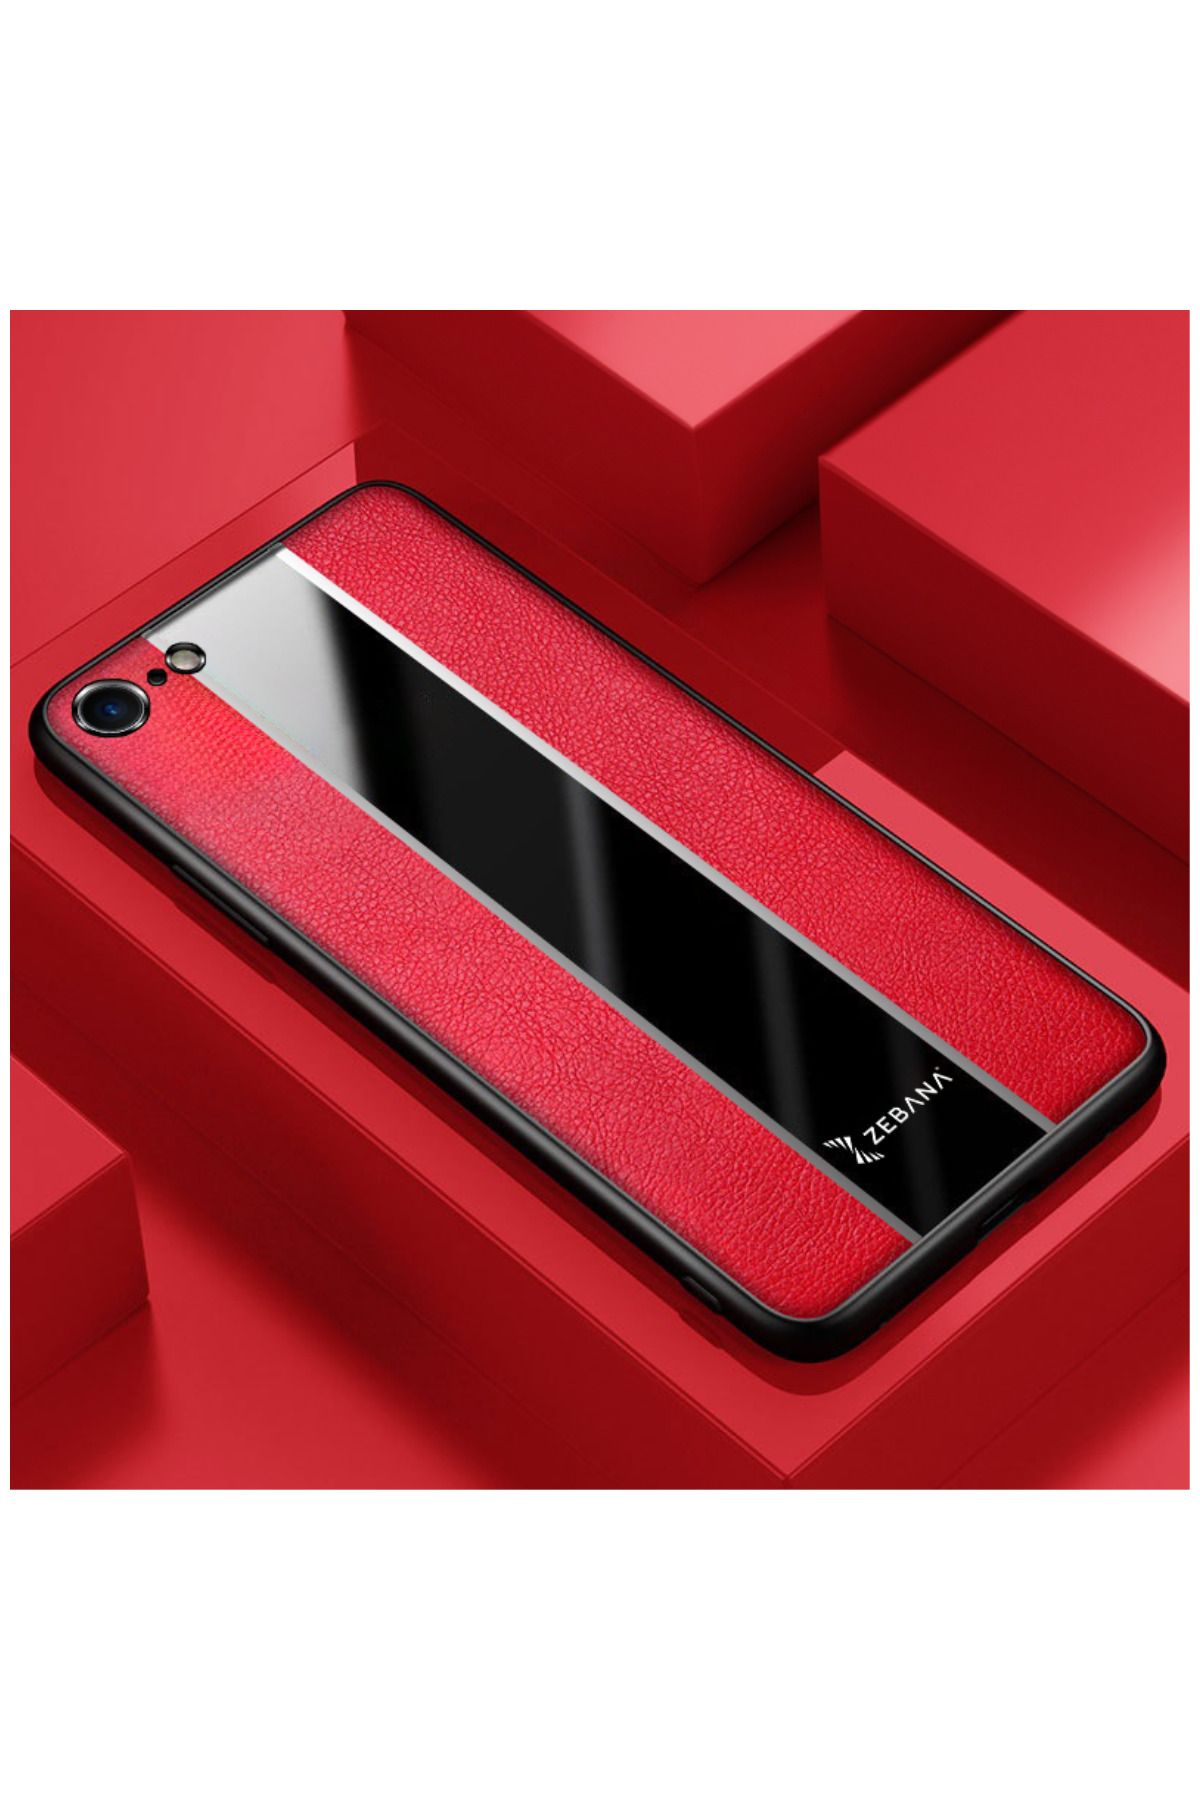 Zebana Apple Iphone 8 Uyumlu Kılıf Premium Deri Kılıf Kırmızı